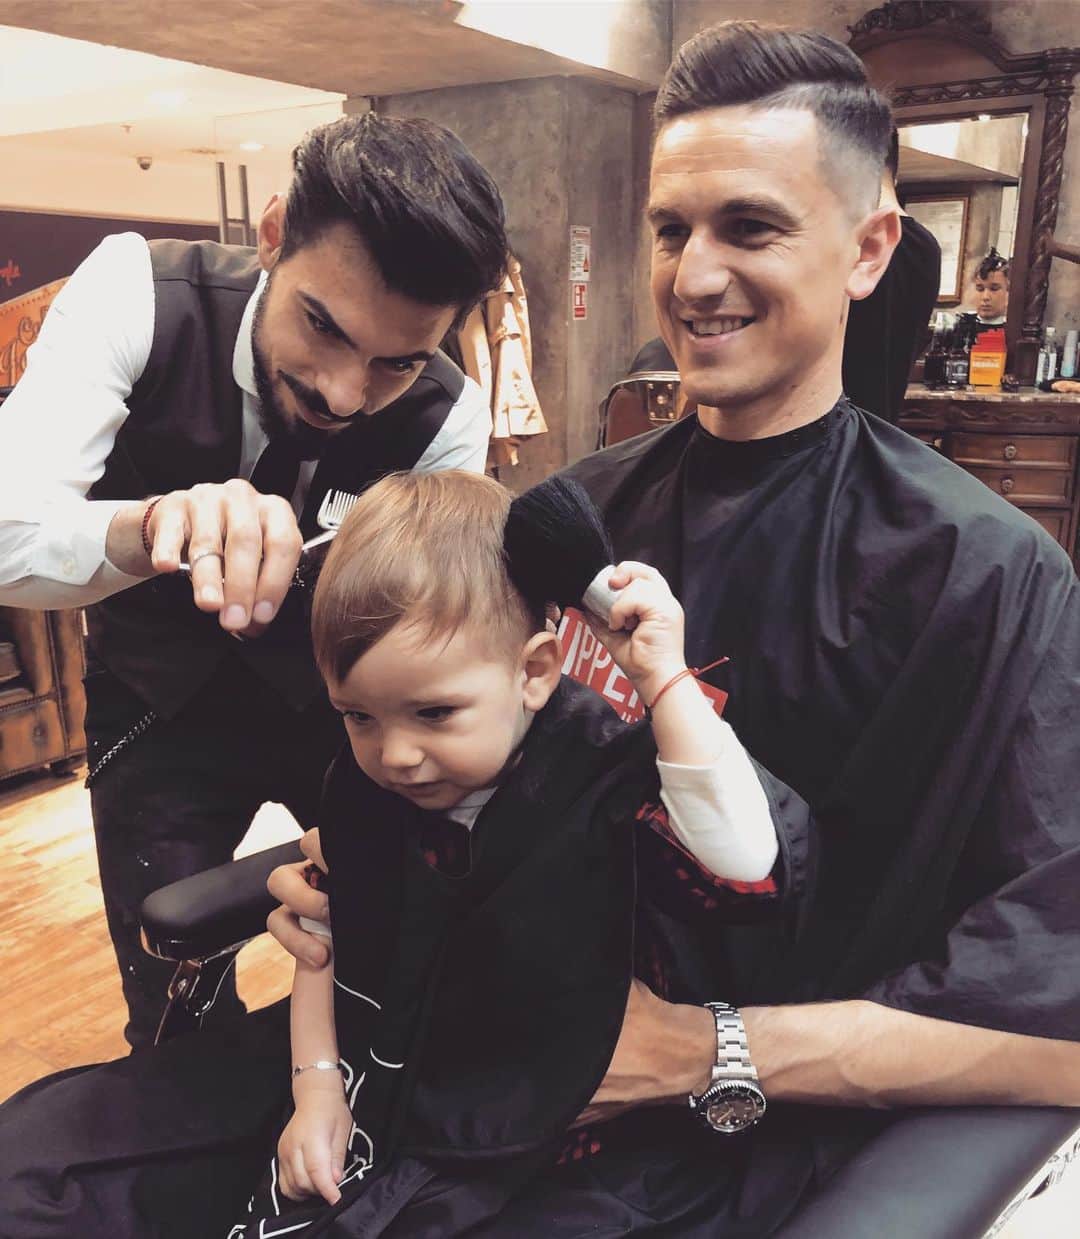 フローリン・ガルドシュさんのインスタグラム写真 - (フローリン・ガルドシュInstagram)「Time to look good 😁✂️⠀⠀⠀⠀⠀⠀⠀⠀⠀⠀⠀⠀⠀⠀⠀⠀⠀⠀⠀⠀⠀⠀⠀⠀⠀⠀⠀⠀⠀⠀⠀⠀⠀⠀⠀⠀⠀⠀⠀⠀⠀⠀⠀⠀⠀⠀⠀⠀⠀⠀⠀⠀⠀⠀⠀⠀⠀⠀⠀⠀⠀⠀⠀⠀⠀⠀⠀⠀⠀⠀⠀⠀⠀⠀⠀⠀⠀⠀⠀⠀⠀⠀⠀⠀⠀⠀⠀⠀⠀⠀⠀⠀⠀⠀⠀⠀⠀⠀⠀⠀⠀⠀⠀⠀⠀⠀⠀⠀⠀⠀⠀⠀⠀⠀⠀⠀⠀⠀⠀⠀⠀⠀⠀⠀⠀⠀⠀⠀⠀⠀⠀⠀⠀⠀⠀⠀⠀⠀⠀⠀⠀⠀⠀⠀⠀⠀⠀⠀⠀⠀⠀⠀⠀⠀⠀⠀⠀⠀⠀⠀⠀⠀⠀⠀⠀⠀⠀⠀⠀⠀⠀⠀⠀⠀⠀⠀⠀⠀⠀⠀⠀⠀⠀⠀⠀⠀⠀⠀⠀⠀⠀⠀⠀⠀⠀⠀⠀⠀⠀⠀⠀⠀⠀⠀⠀⠀⠀⠀⠀⠀⠀⠀⠀⠀⠀⠀⠀⠀⠀⠀⠀⠀⠀⠀⠀⠀⠀⠀⠀⠀⠀⠀⠀⠀⠀⠀⠀⠀⠀⠀⠀⠀⠀⠀⠀⠀⠀⠀⠀⠀⠀⠀⠀⠀⠀⠀⠀⠀⠀⠀⠀⠀⠀⠀⠀⠀⠀⠀⠀⠀⠀⠀⠀⠀⠀⠀⠀⠀⠀⠀⠀⠀⠀⠀⠀⠀⠀⠀⠀⠀⠀⠀⠀⠀⠀⠀⠀⠀⠀⠀⠀⠀⠀⠀⠀⠀⠀⠀⠀⠀⠀⠀⠀⠀⠀⠀⠀⠀⠀⠀⠀⠀⠀⠀⠀⠀⠀⠀⠀⠀⠀⠀⠀⠀⠀⠀⠀⠀⠀⠀⠀⠀⠀⠀⠀⠀⠀⠀⠀⠀⠀⠀⠀⠀⠀⠀⠀⠀⠀⠀⠀⠀⠀#freshtrim✂️ #barber #barbershop #haircut #style #hair #menstyle #men #fatherandson #father #family #love #bebedavid #parenting #goals #iasi #palas #romania🇹🇩」5月26日 5時56分 - floringardos